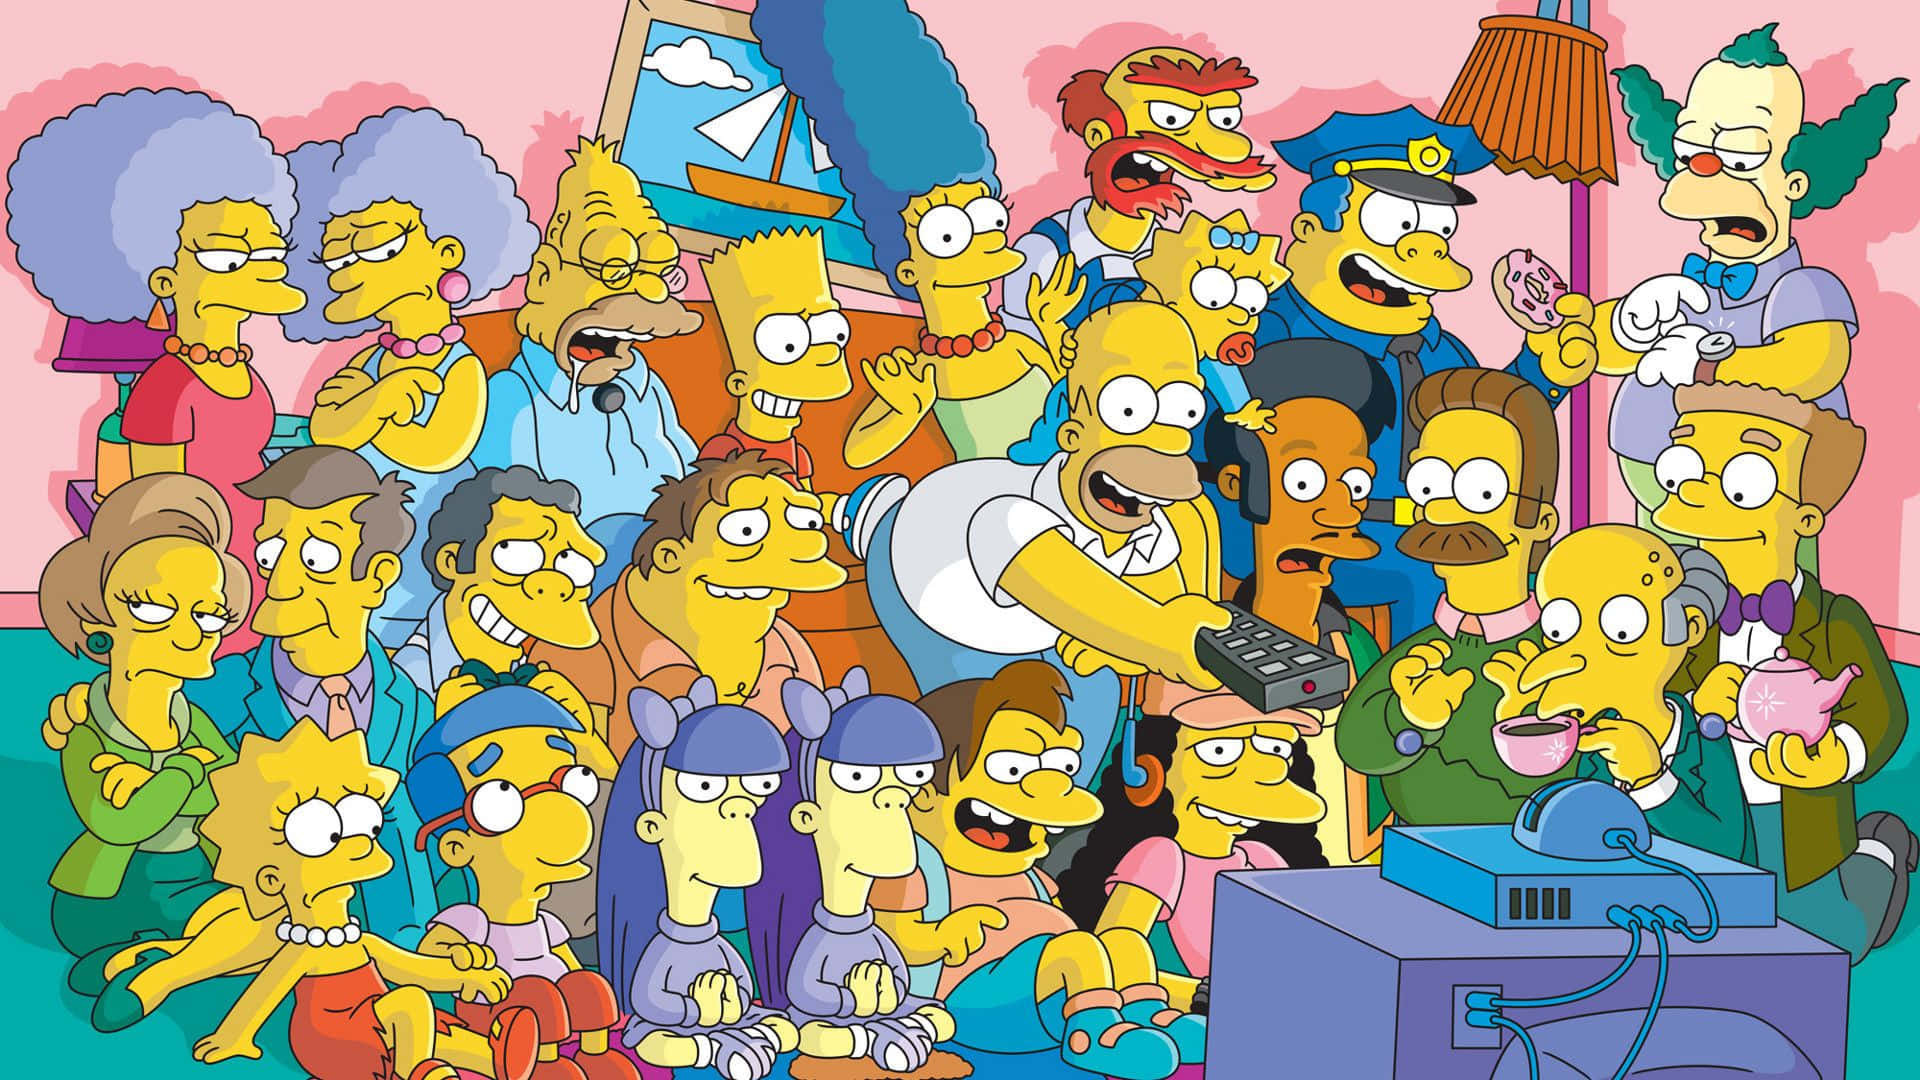 The Simpsons family portrait